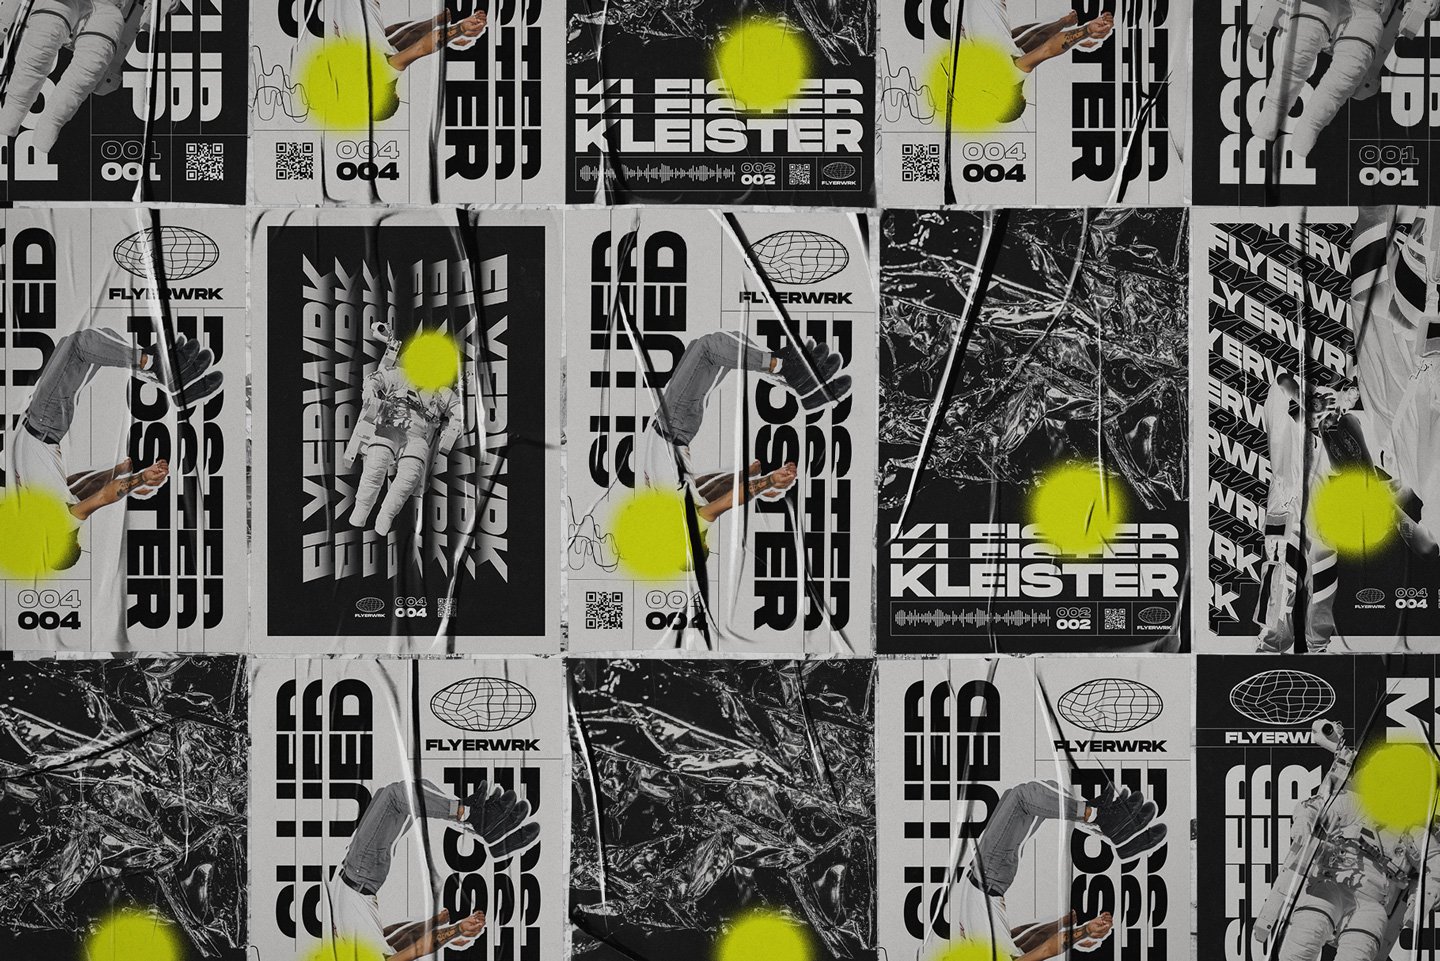 544 潮流街头胶合褶皱做旧海报设计贴图展示样机模板PS素材 Flyerwrk – Glued Poster Textures